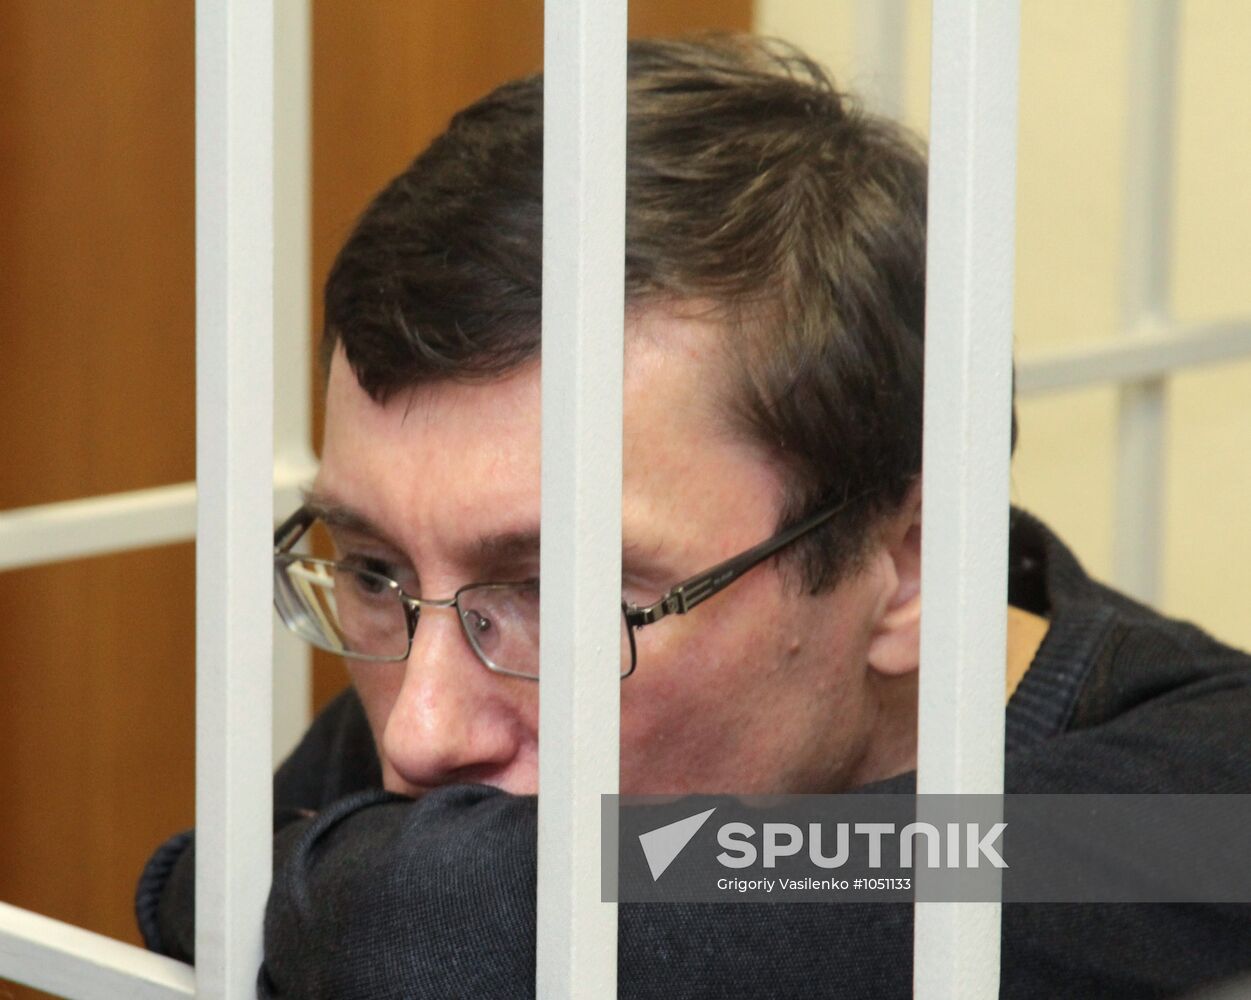 Ukrainian Interior Minister Yuriy Lutsenko's verdict announced